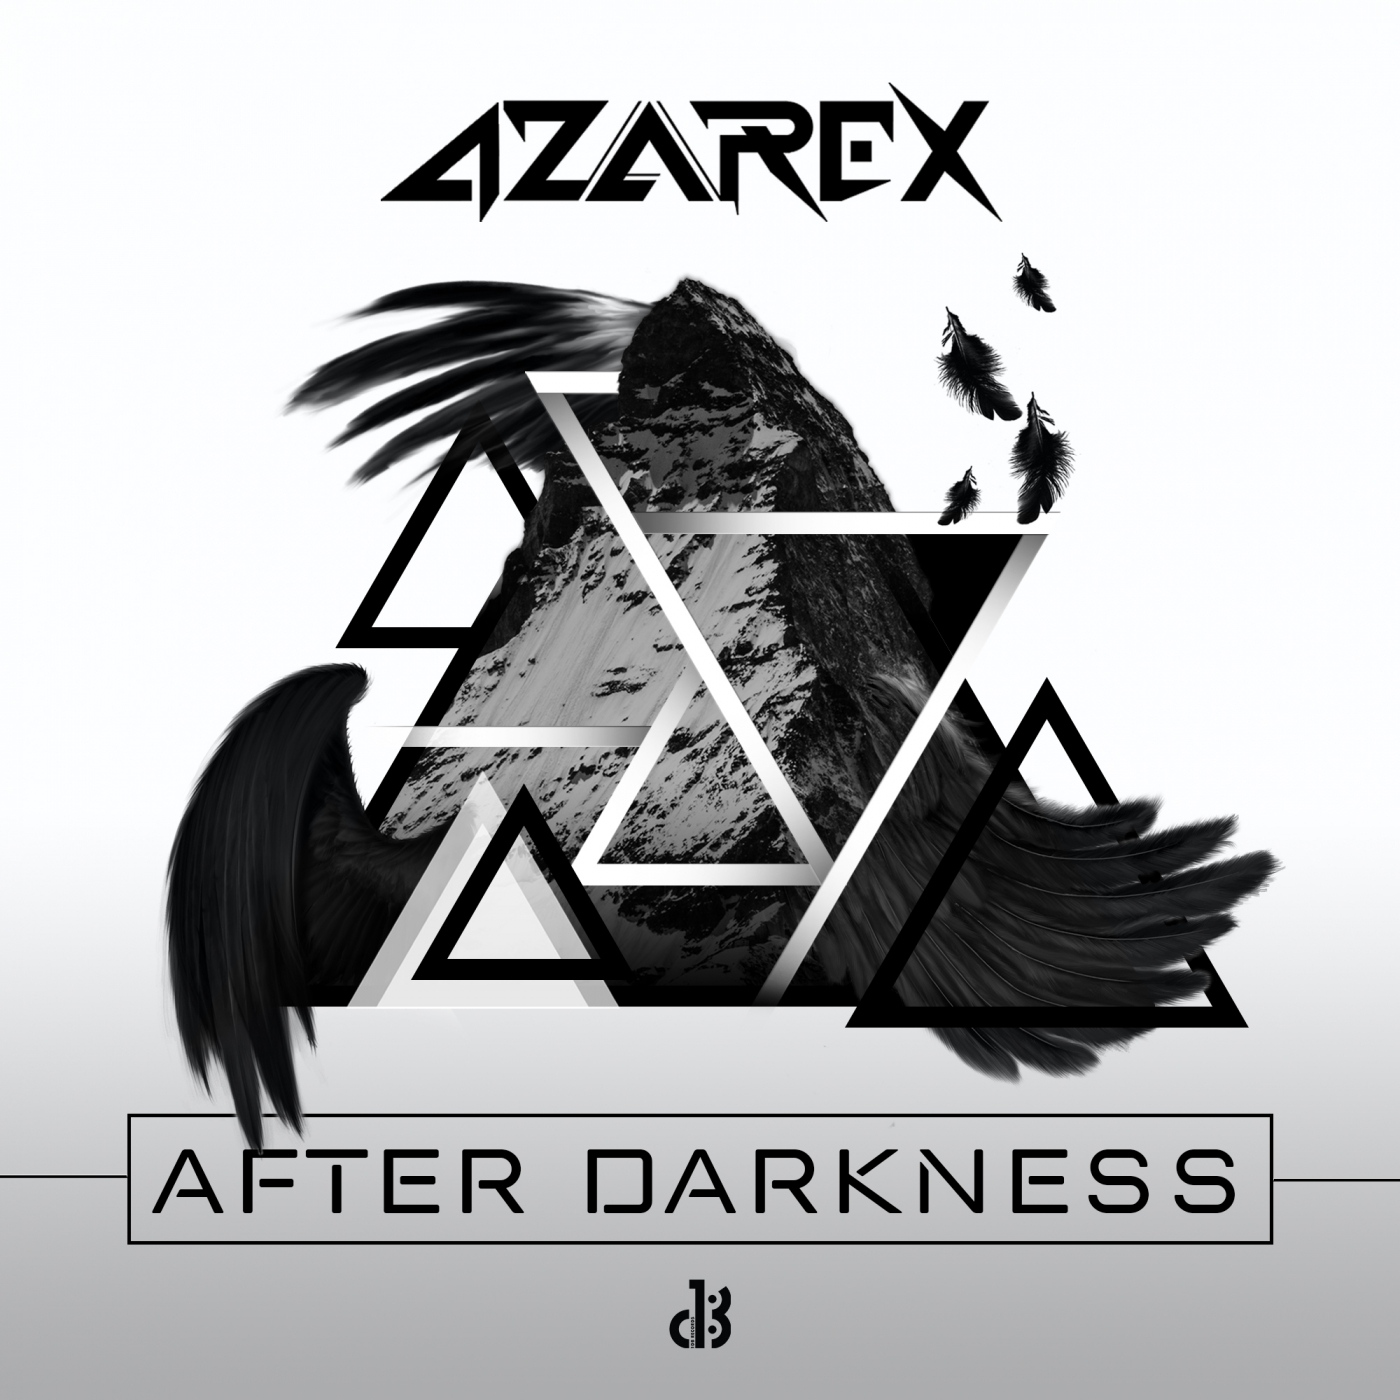 After dark mp3. After Dark. After Darkness. After after Dark. After Darkness мп3.